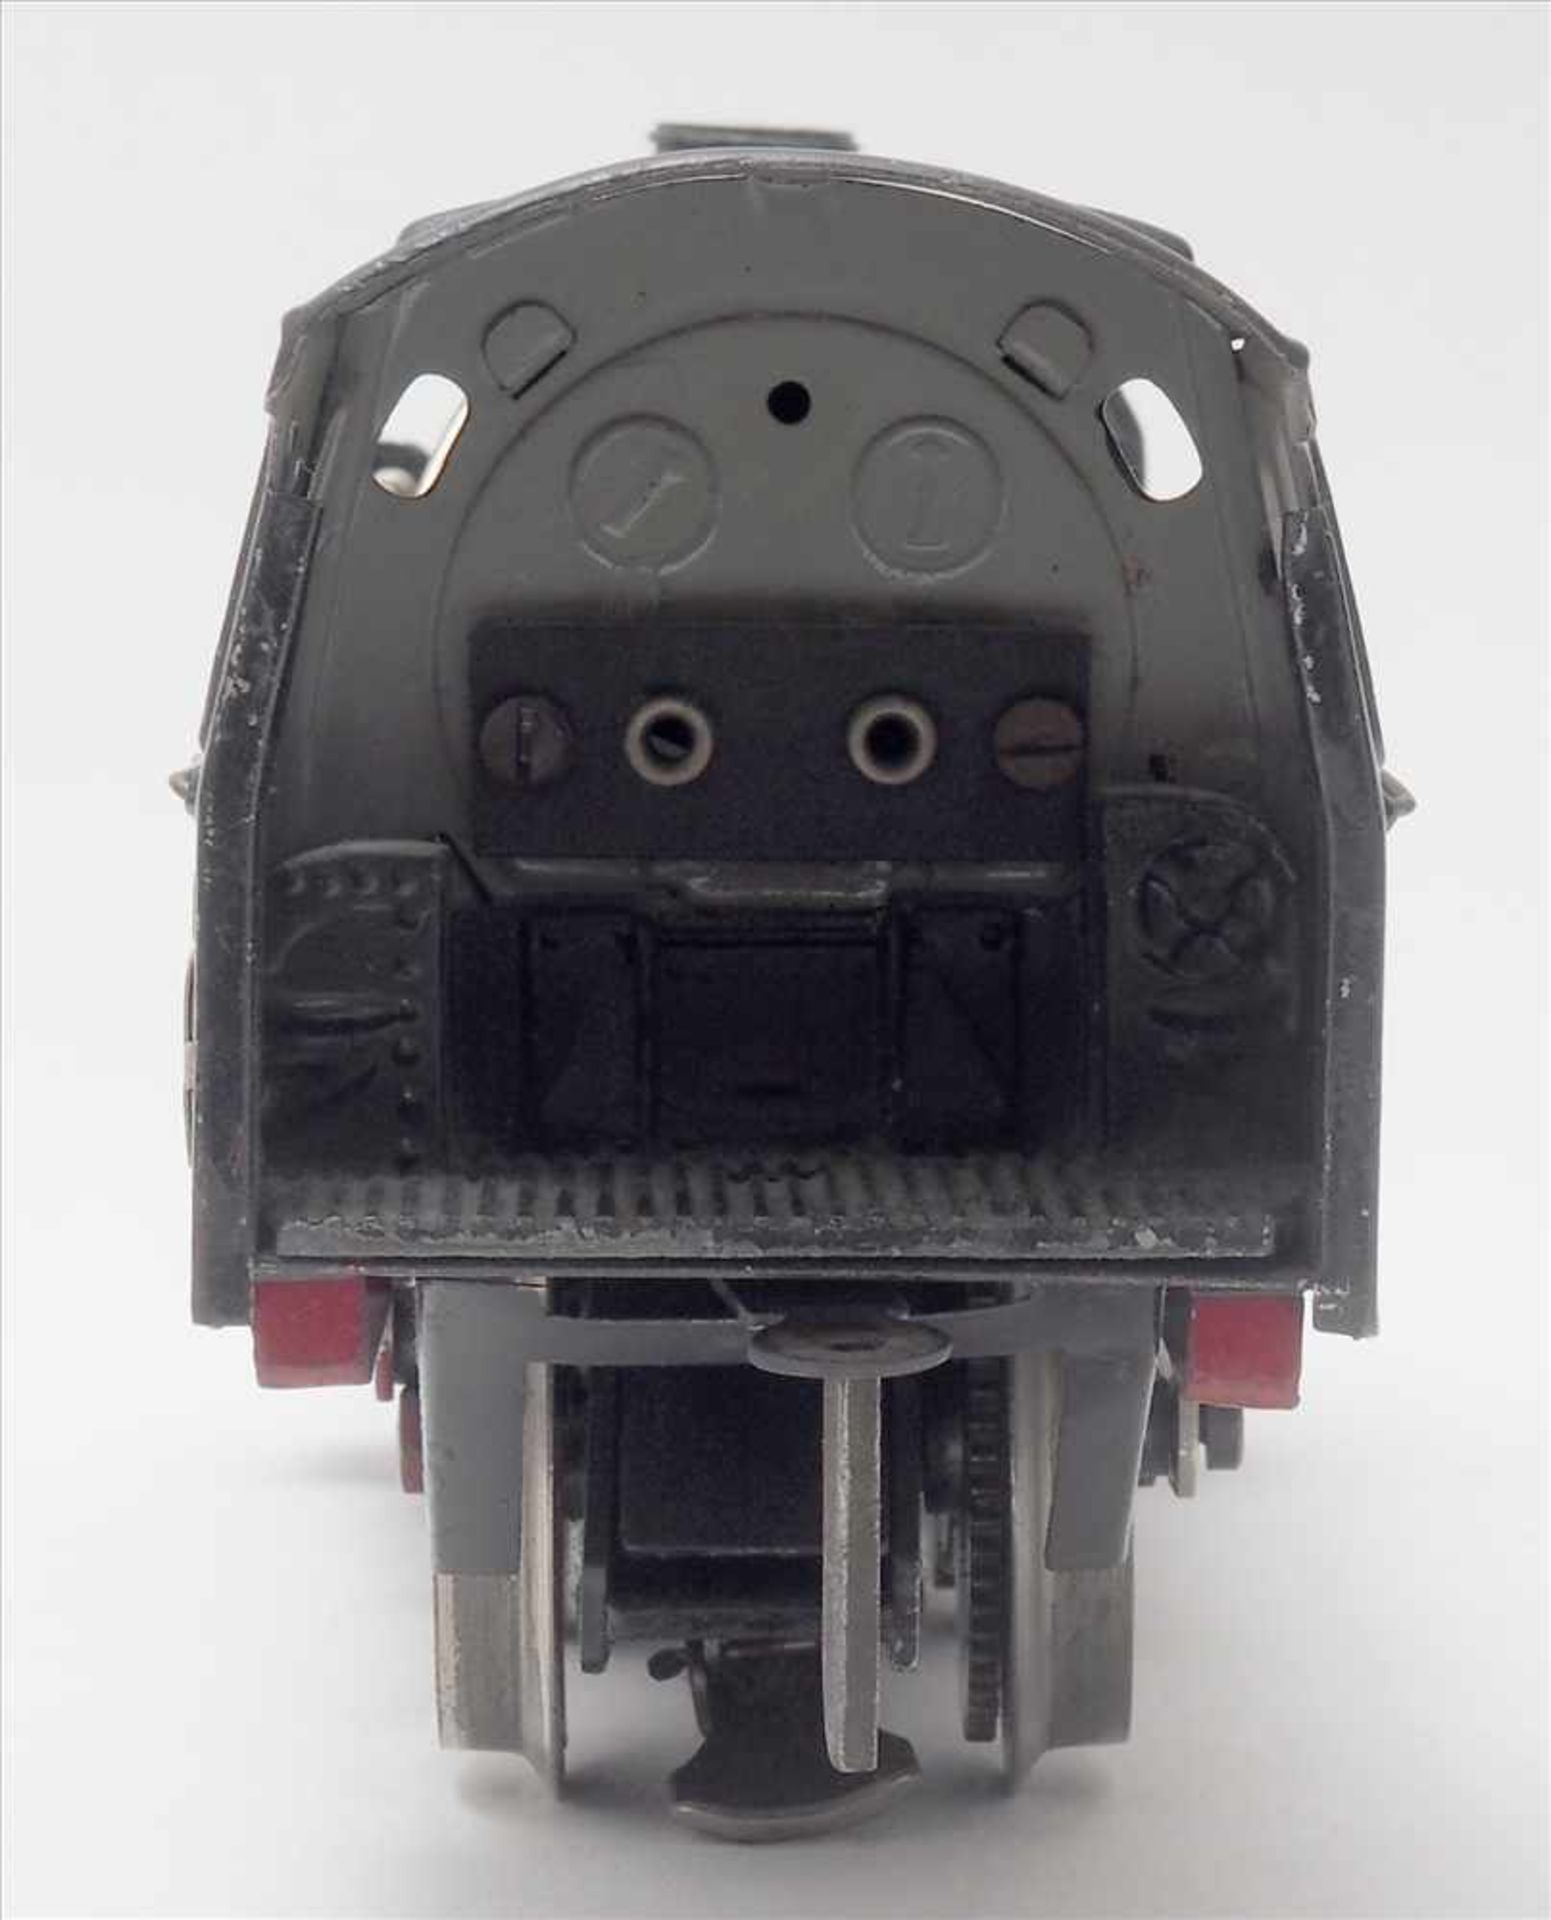 Märklin DampflokSpur 0, 1930-er Jahre. Elektroantrieb. Achsfolge 2B. E70/12920 Dampflokomotive mit - Bild 7 aus 9